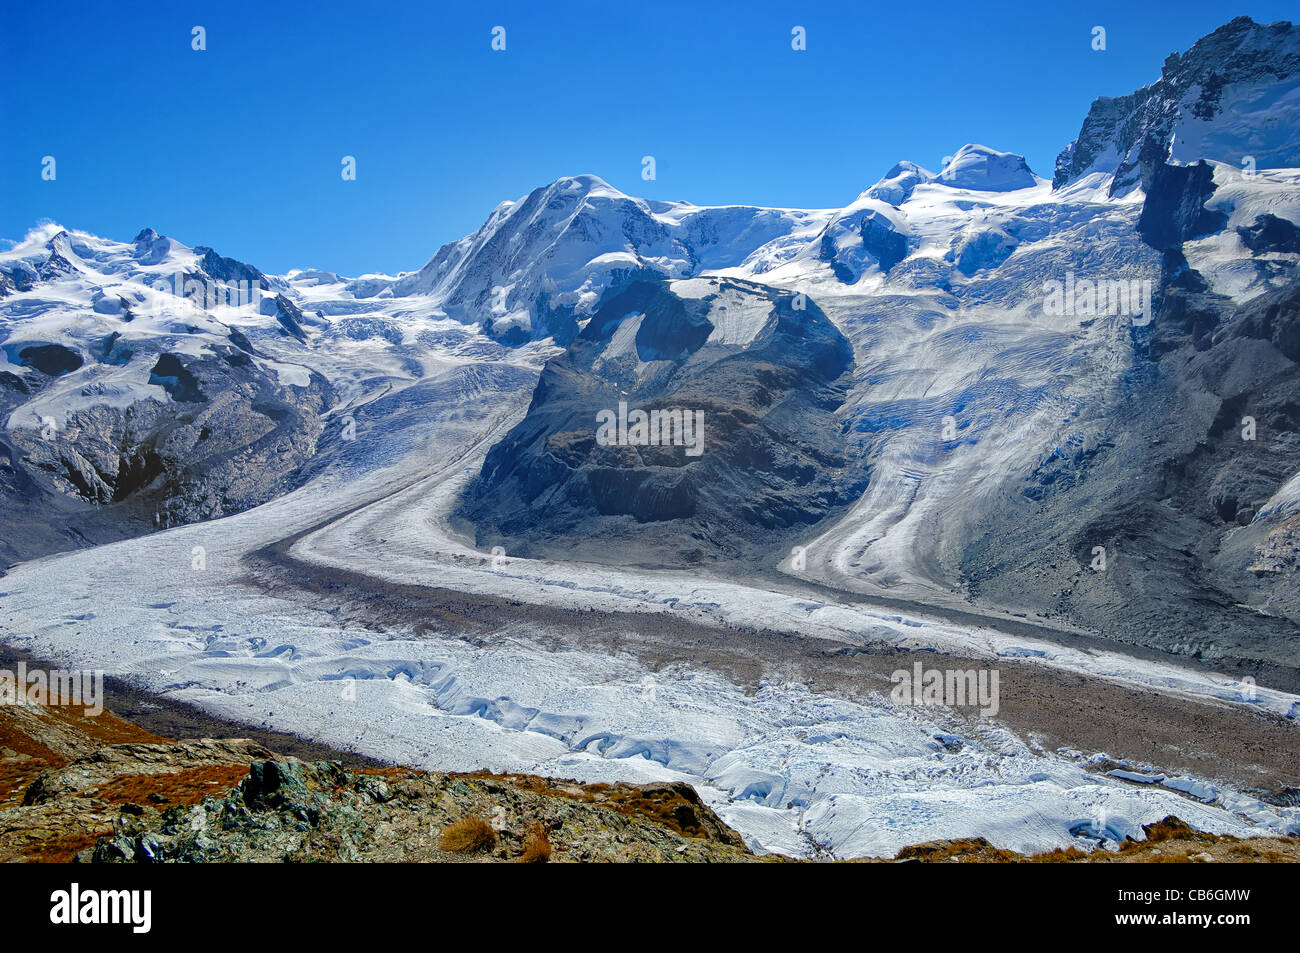 Les glaciers au-dessus du village alpin de Zermatt dans le canton du Valais, Suisse Banque D'Images